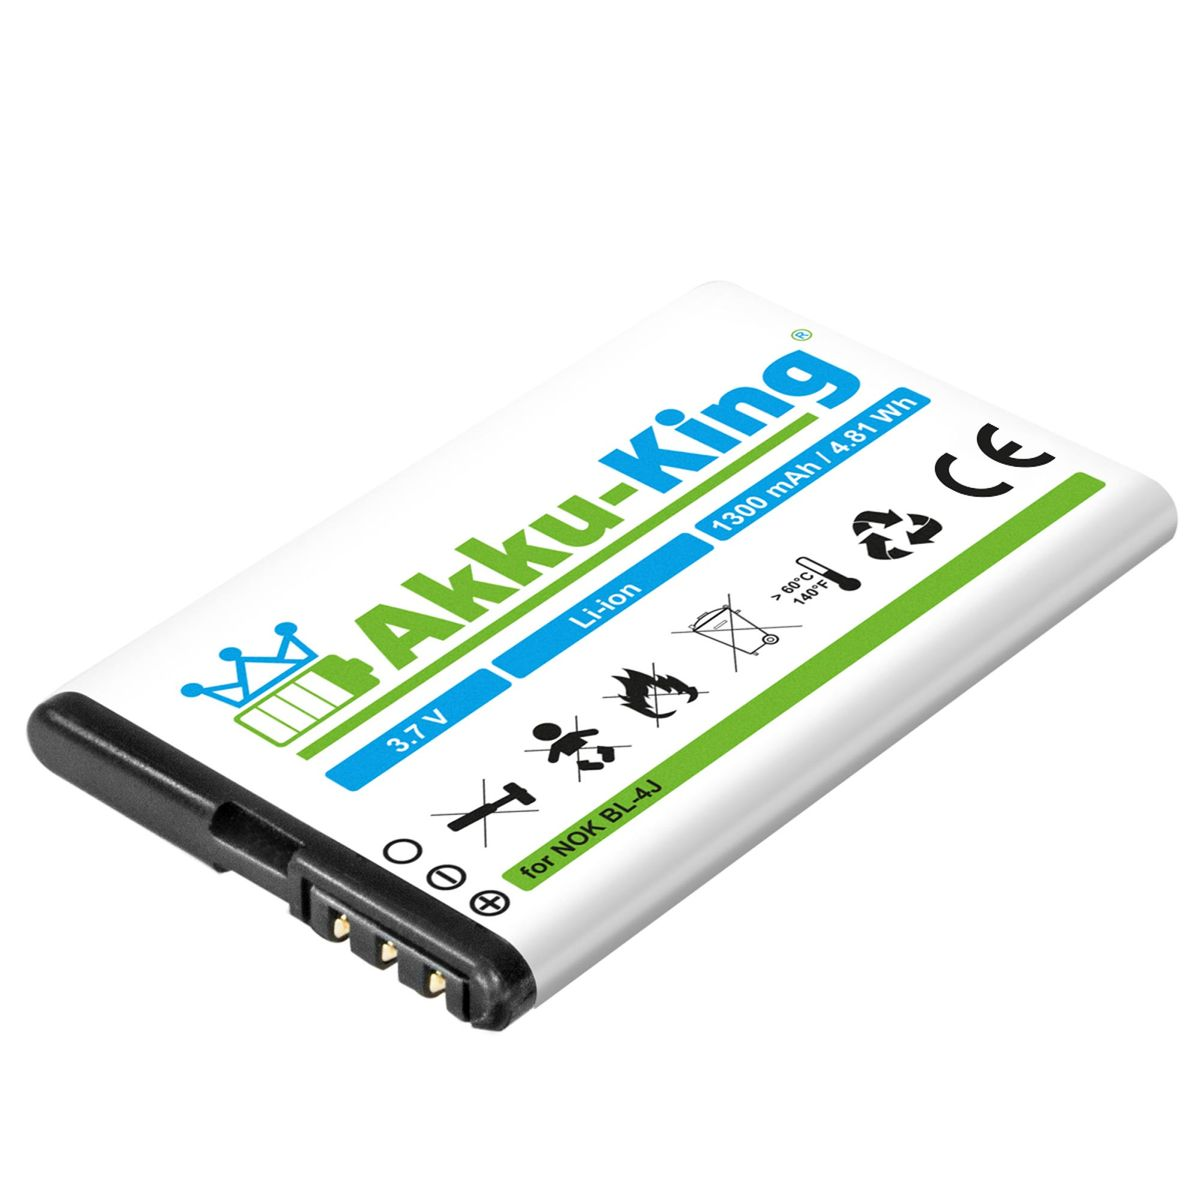 Handy-Akku, kompatibel AKKU-KING Akku BL-4J Nokia Volt, Li-Ion 3.7 1300mAh mit